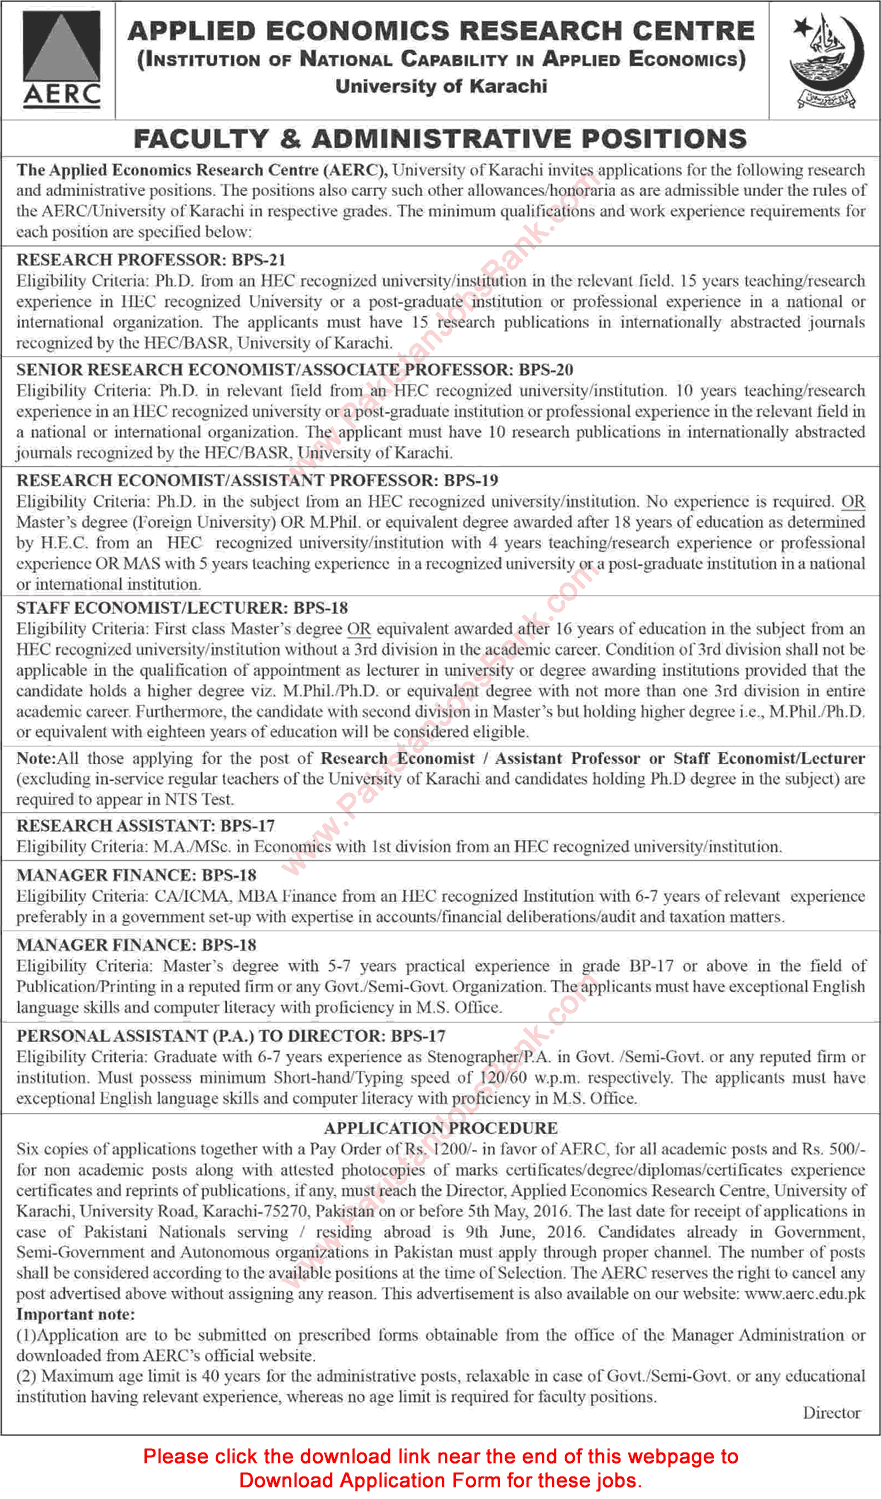 Applied Economics Research Centre Karachi Jobs 2016 April AERC Application Form Download Latest